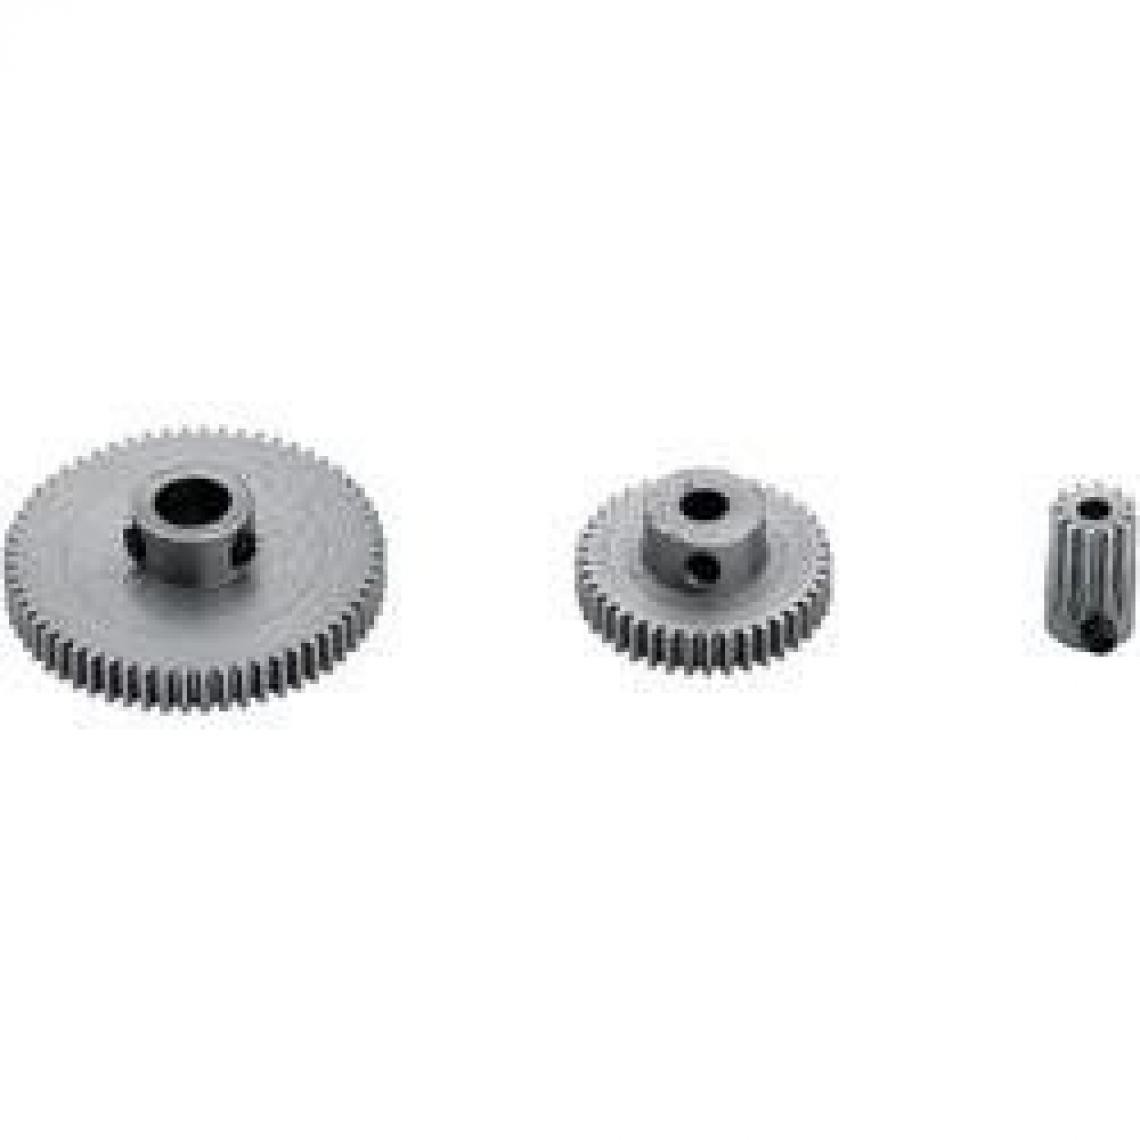 Inconnu - Pignon acier module 0,5 Modelcraft 60 dents - Accessoires et pièces